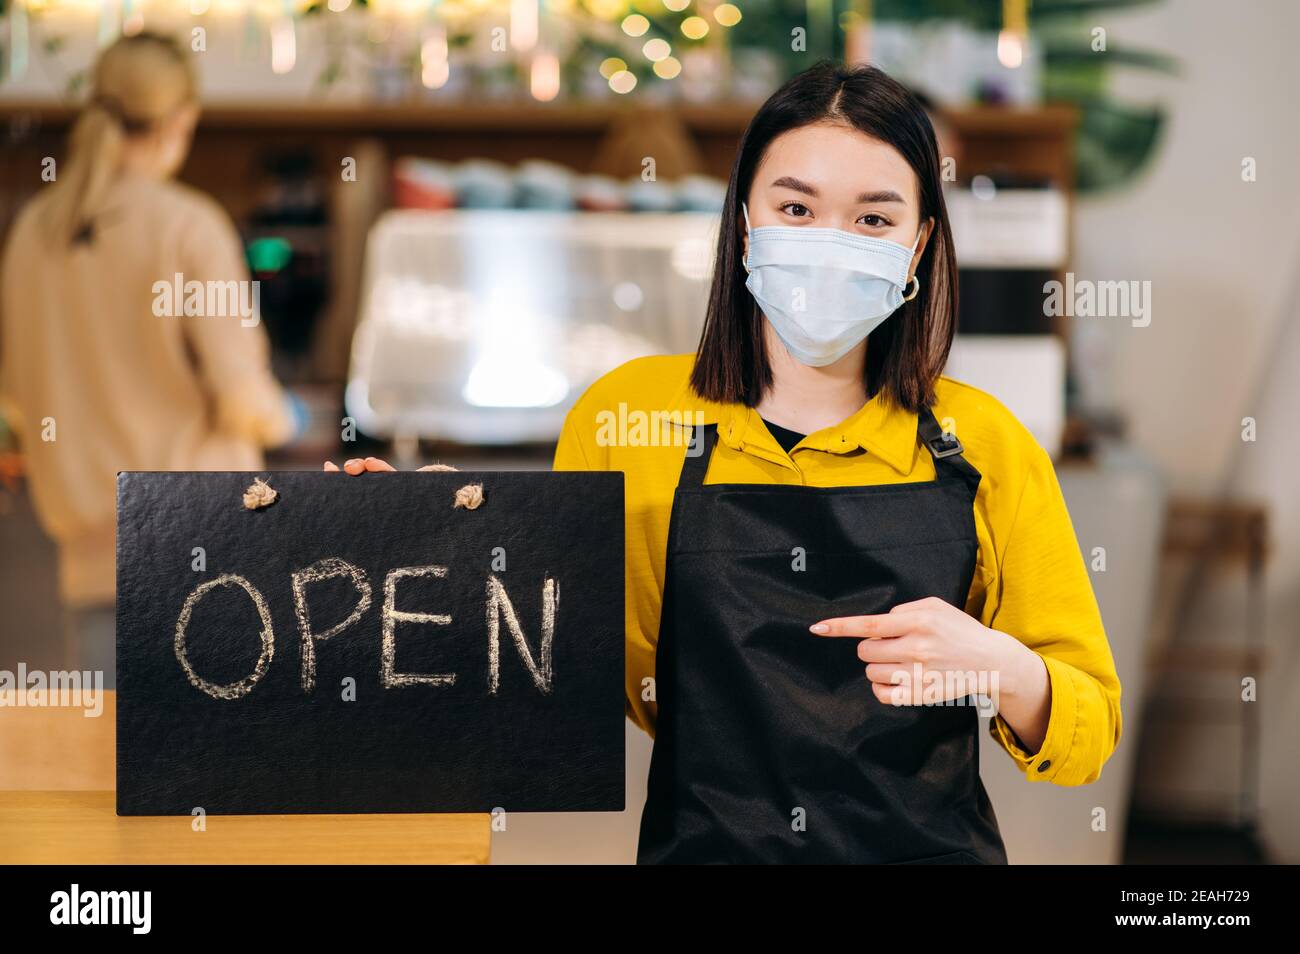 Schild GEÖFFNET. Porträt einer jungen asiatischen Kellnerin, die in einem Restaurant oder Café mit Schutzmaske und schwarzer Schürze steht und das Schild offen hält. Unterstützung des Konzepts für kleine Unternehmen Stockfoto